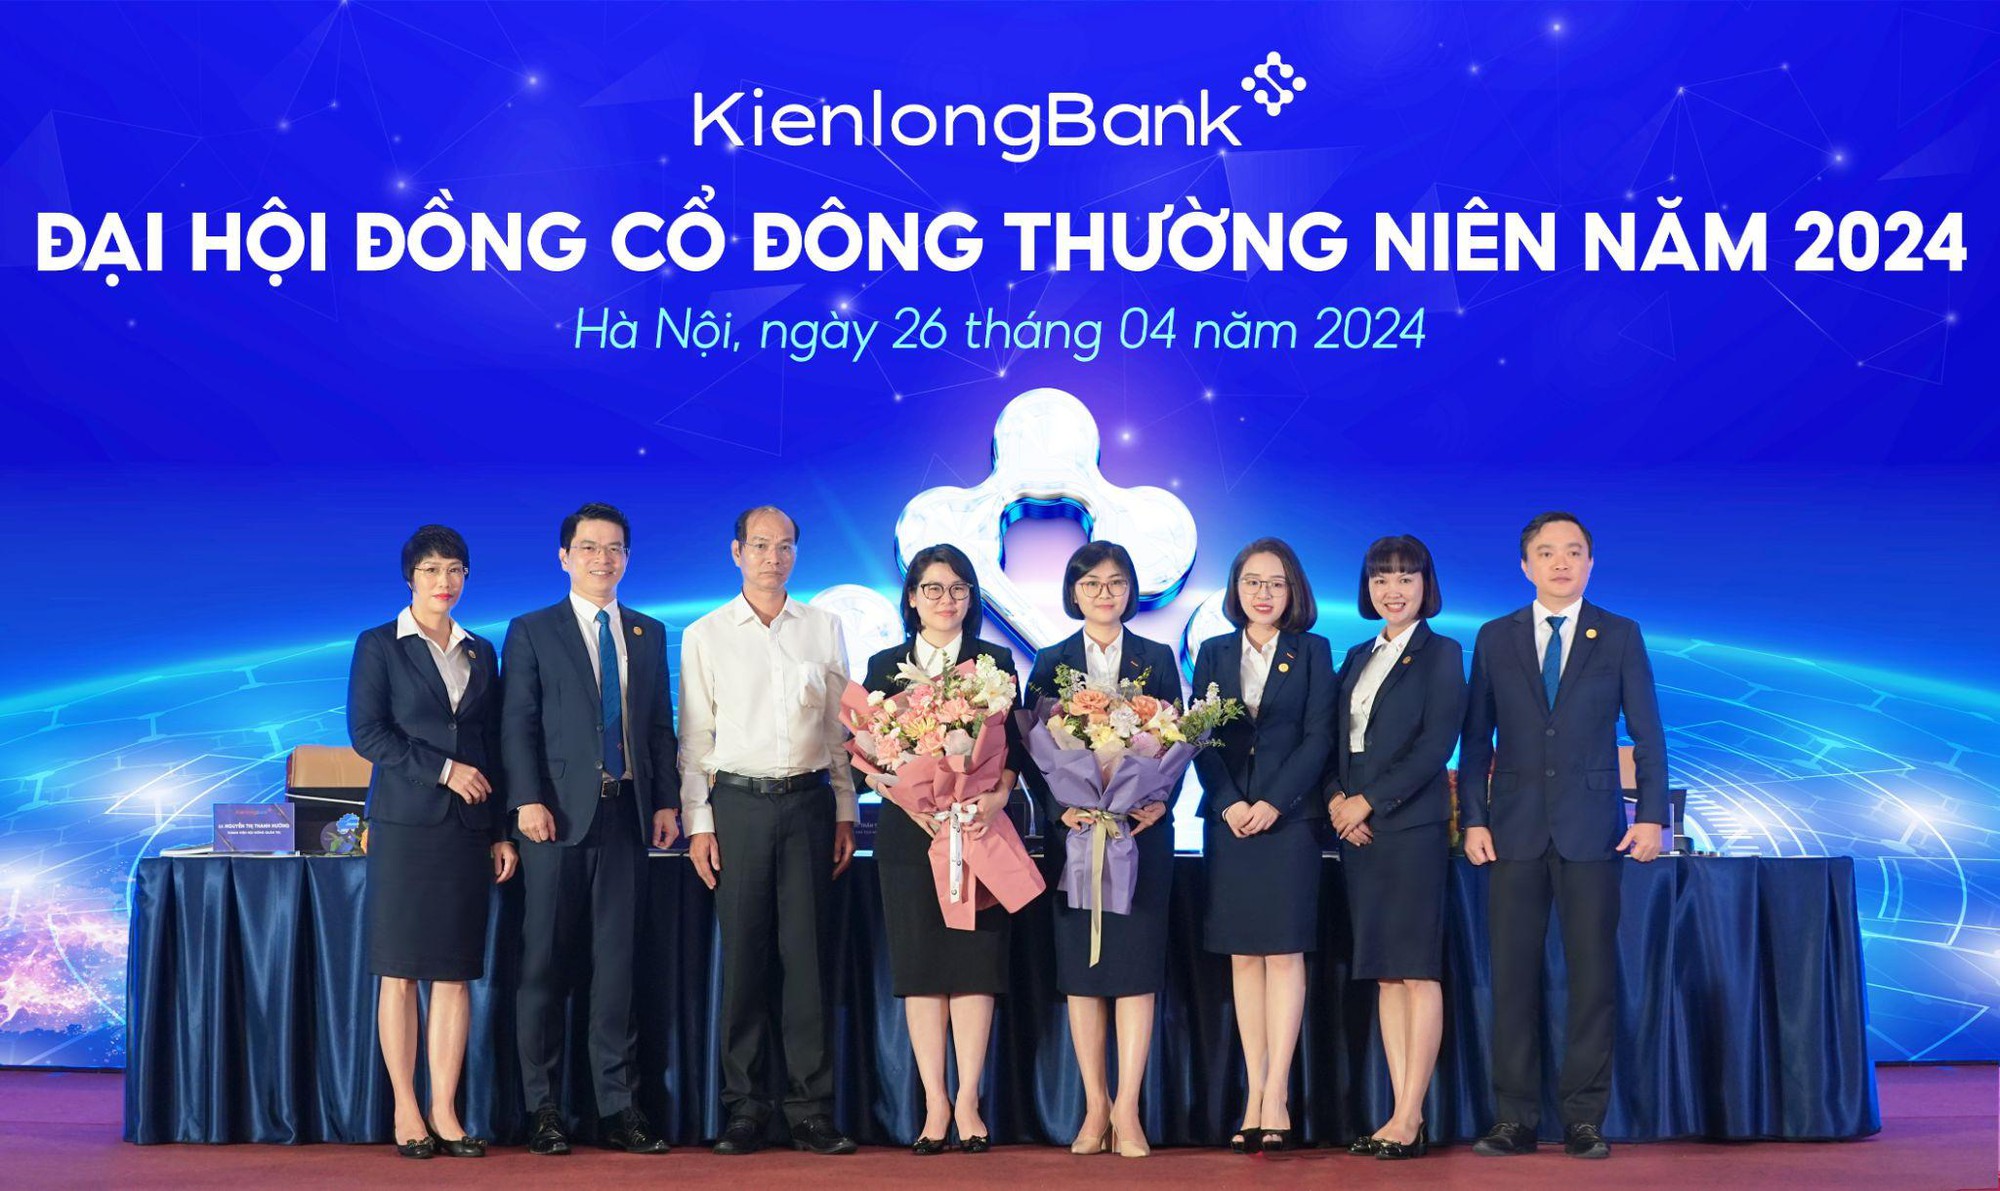 ĐHĐCĐ 2024: KienlongBank đặt mục tiêu lợi nhuận 800 tỷ đồng năm 2024- Ảnh 3.